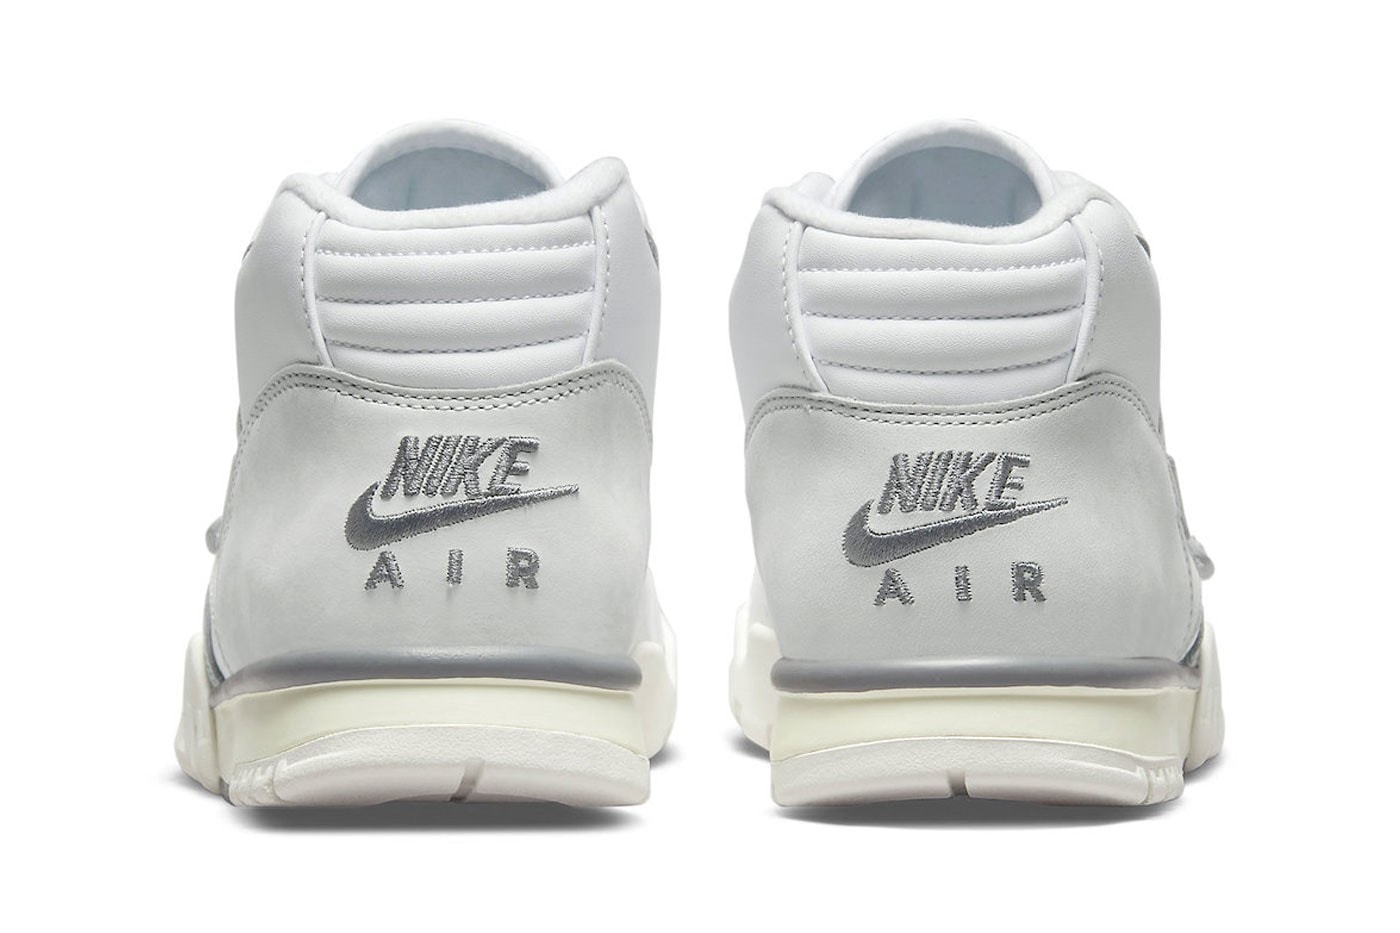 Nike Air Trainer 1 最新配色「Photon Dust」官方圖輯率先亮相